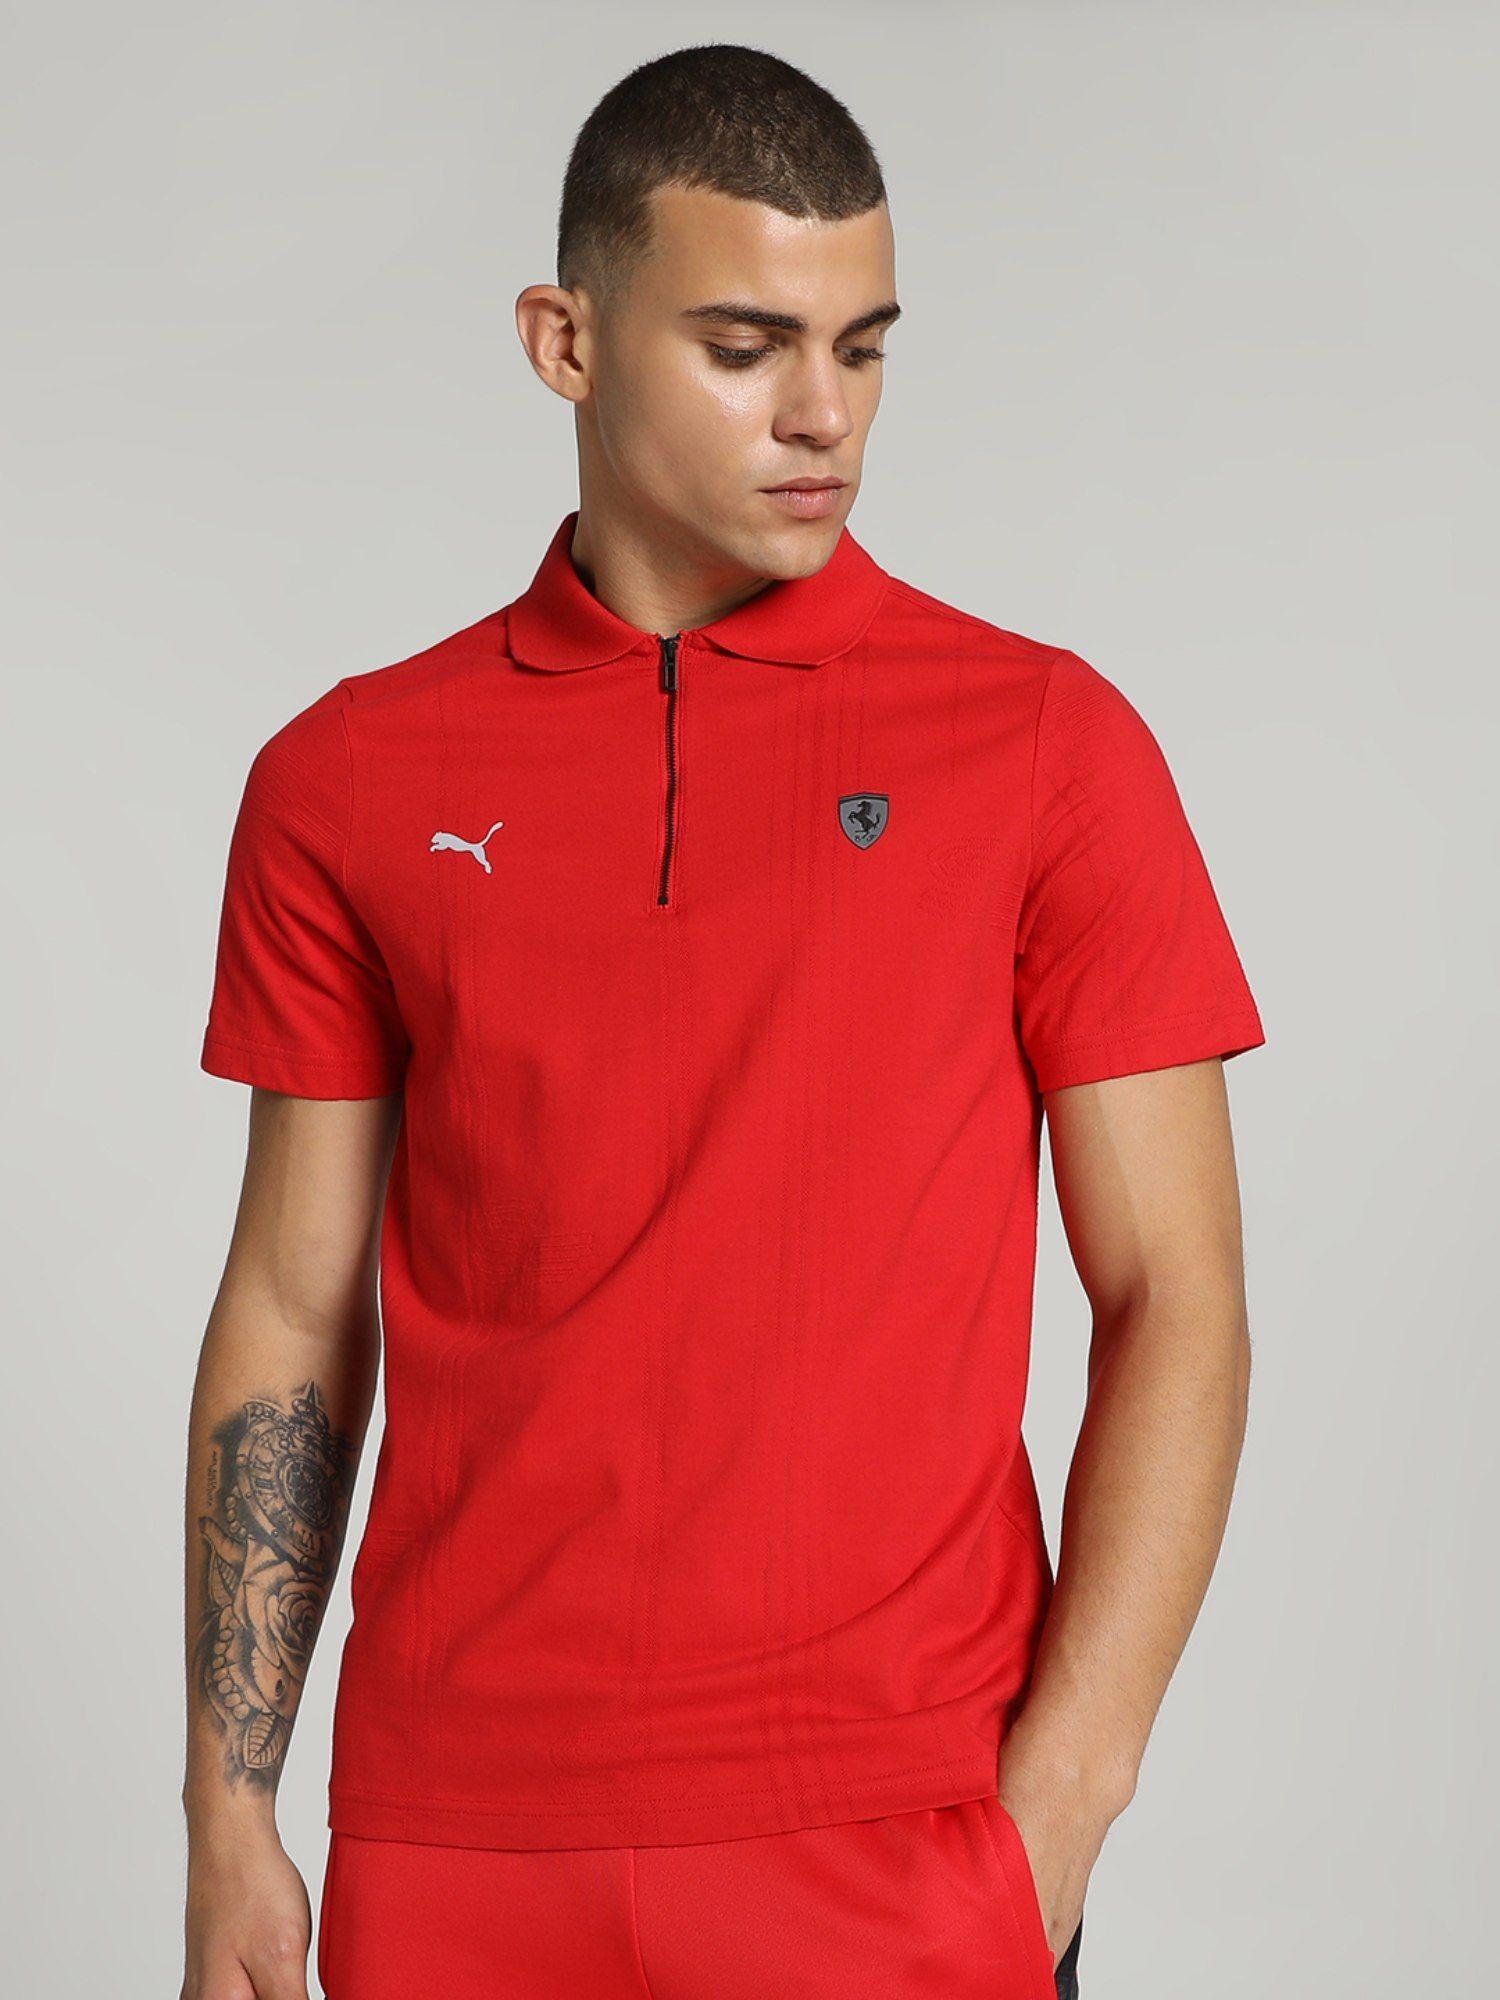 ferrari-style-jacquard-men-red-polo-t-shirt